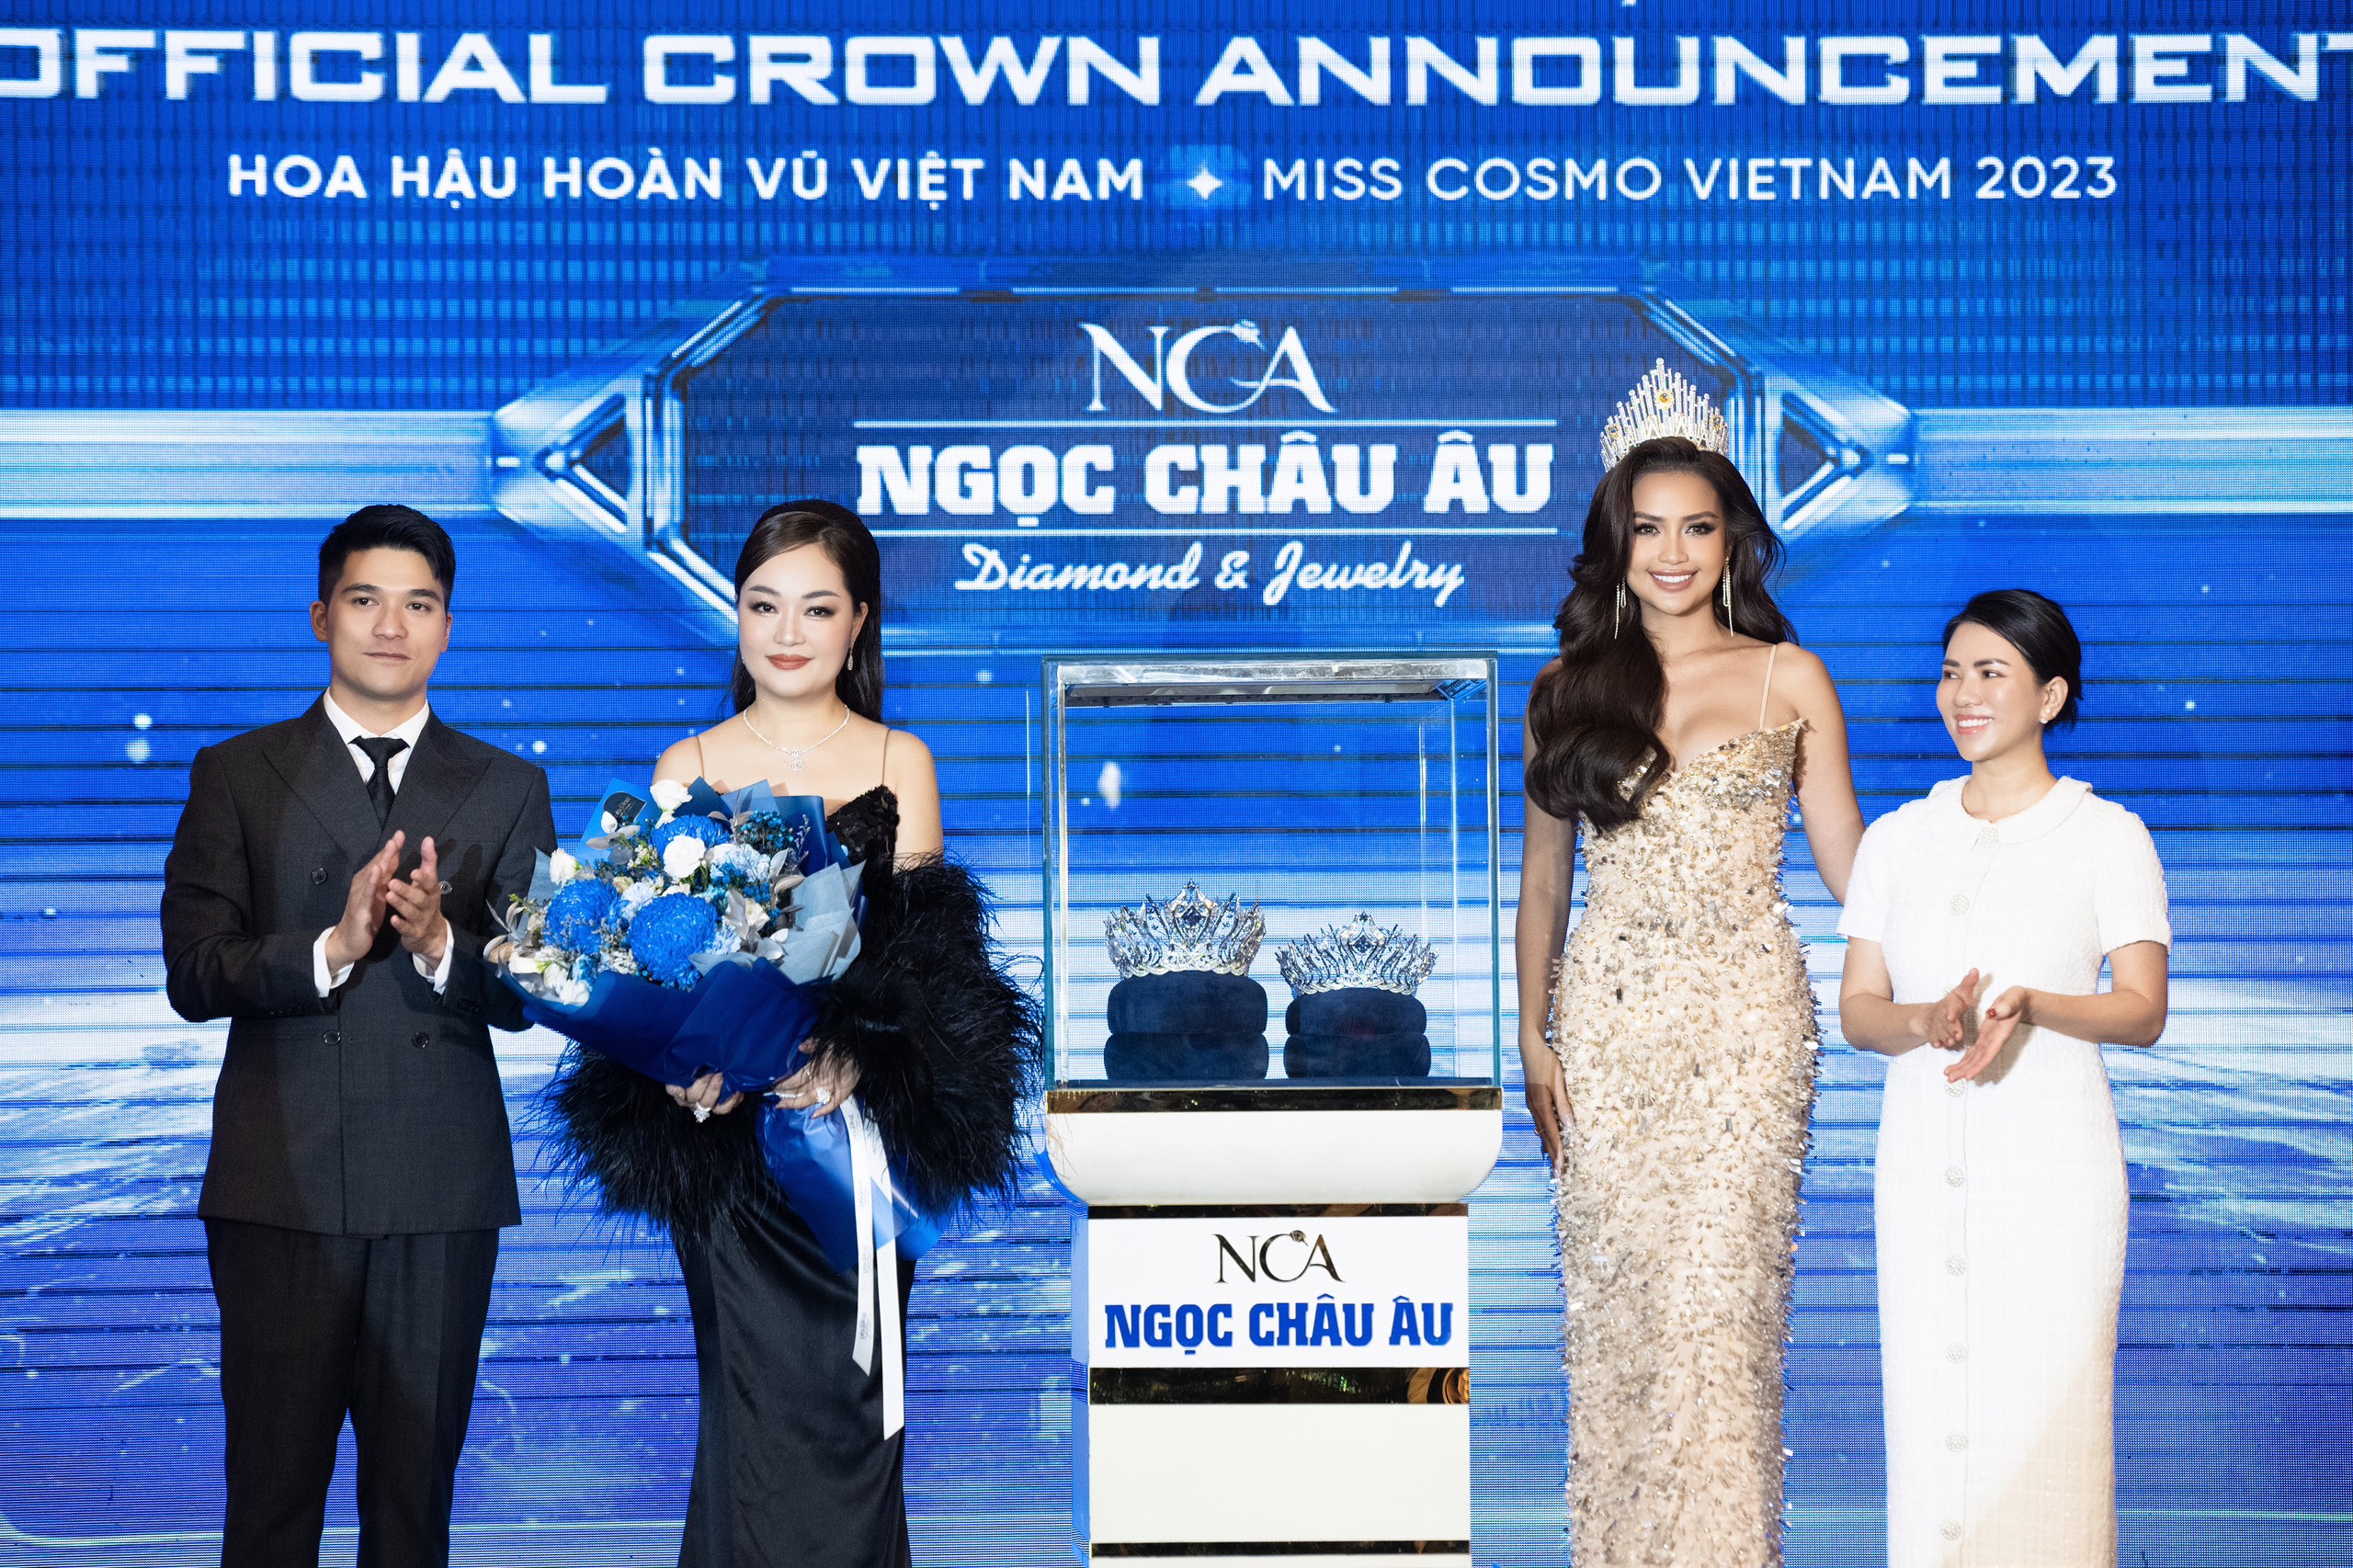 Kim cương Ngọc Châu Âu trở thành nhà tài trợ và chế tác vương miện Hoa hậu Hoàn vũ Việt Nam 2023 - 3